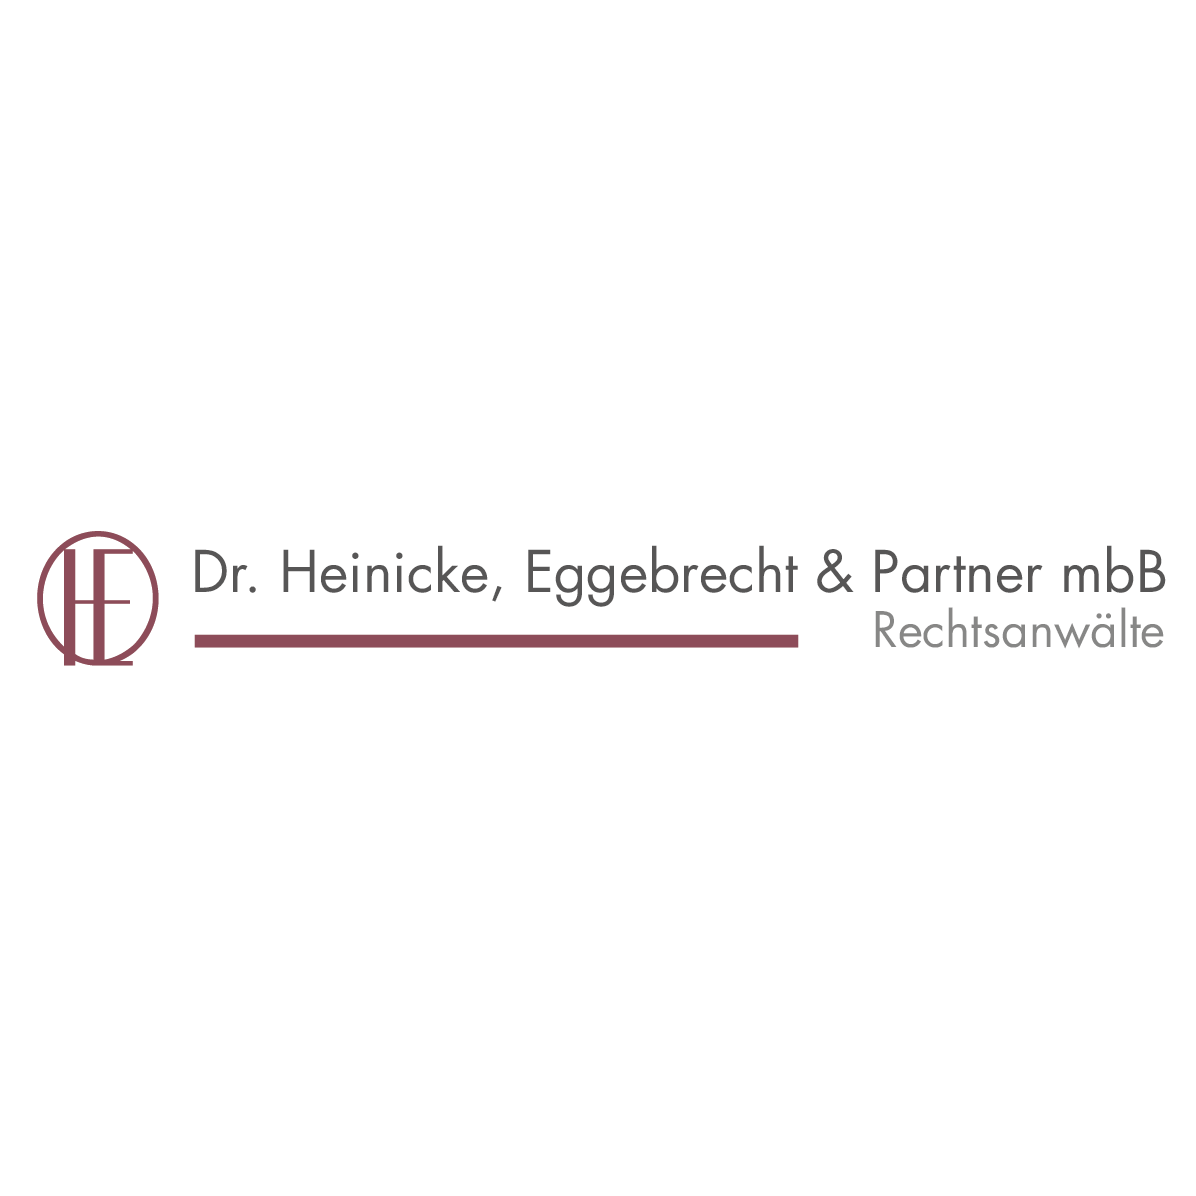 Dr. Heinicke, Eggebrecht & Partner mbB Rechtsanwälte in München - Logo